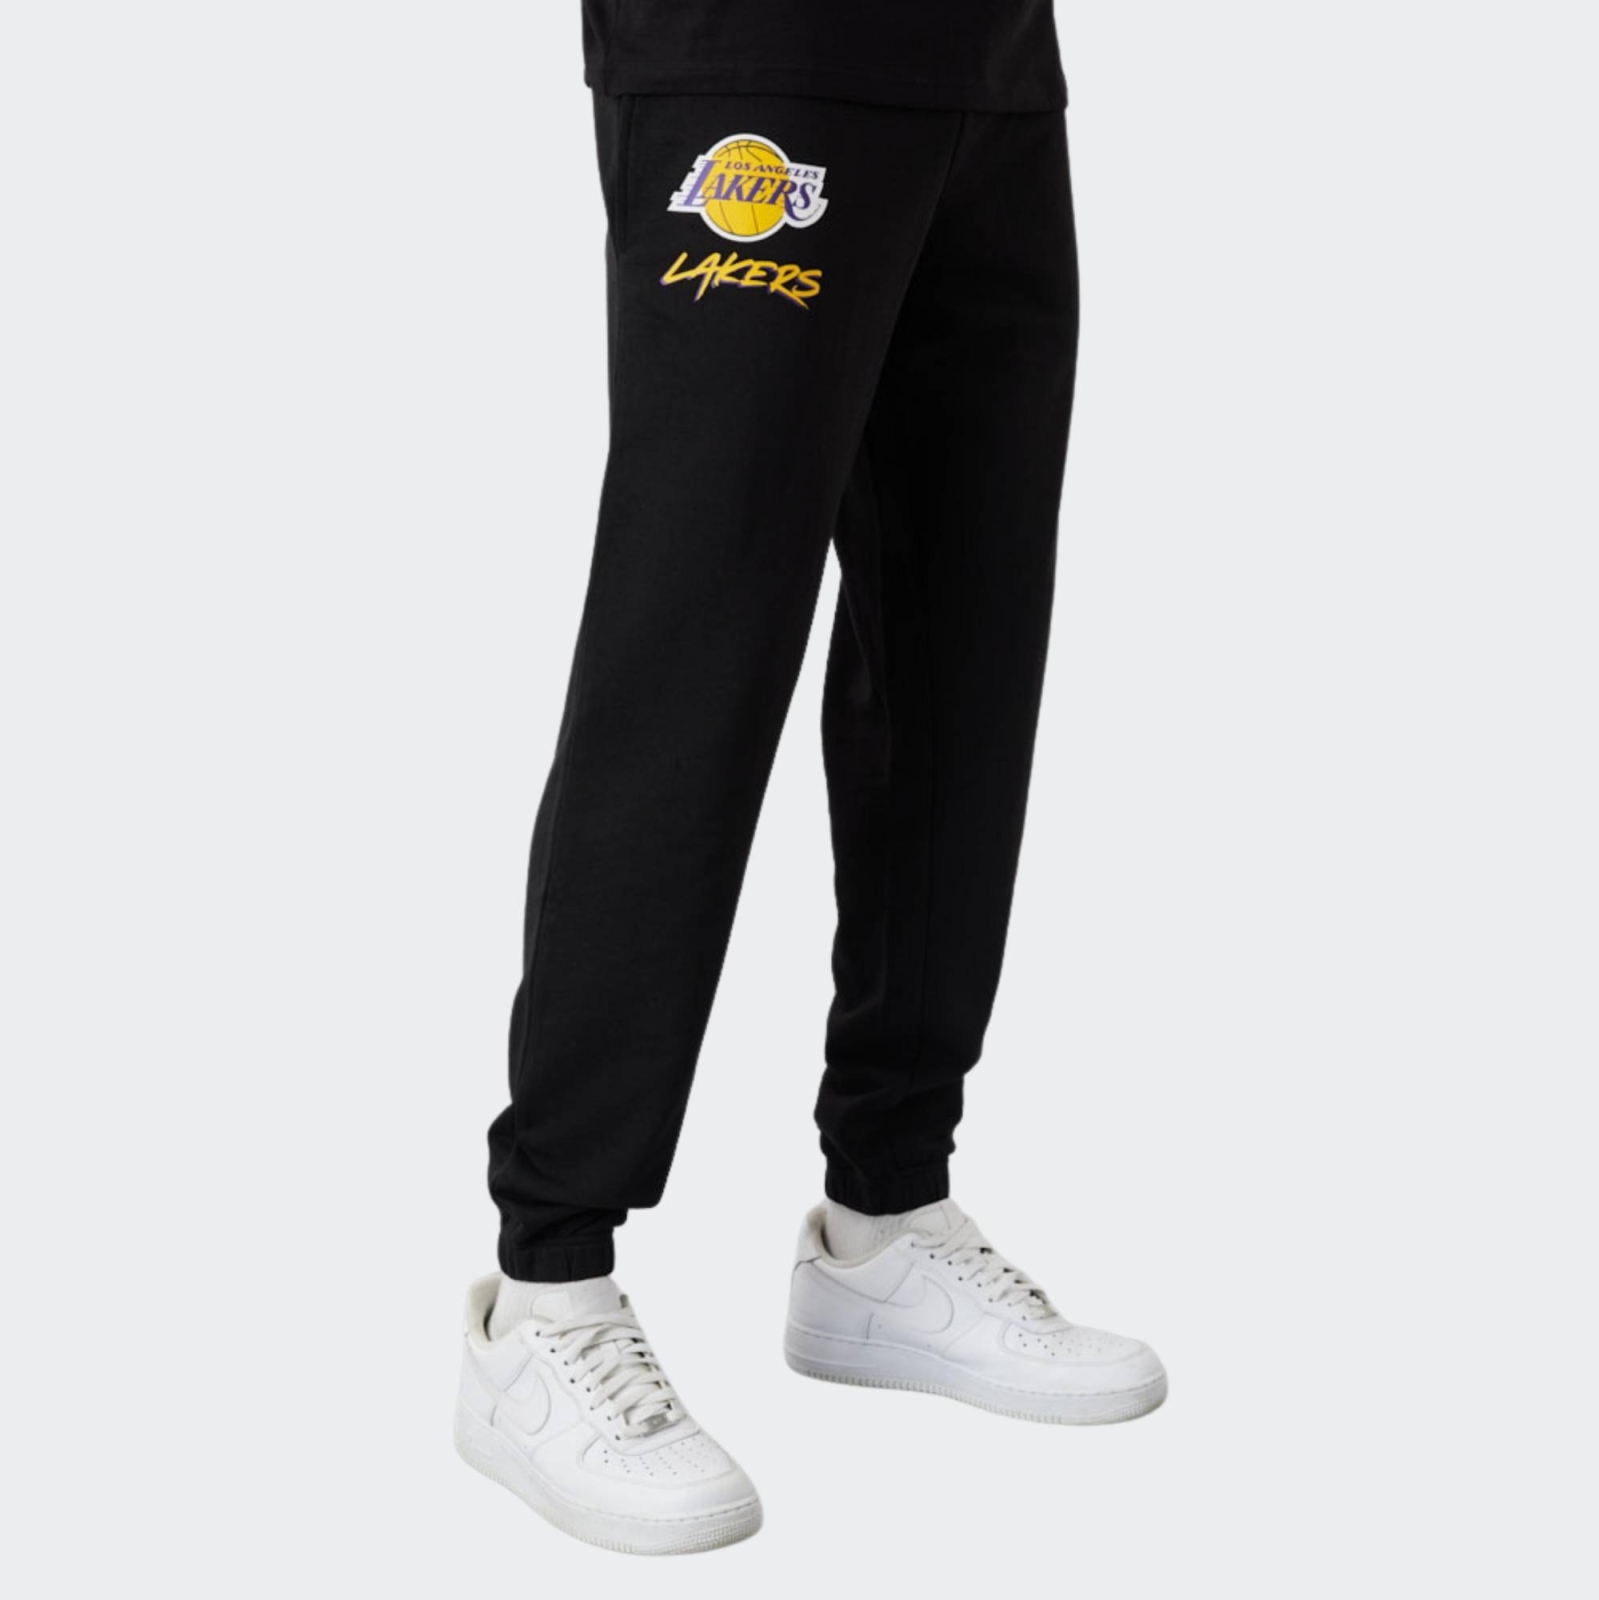 Shop Nba Jogger Pants online